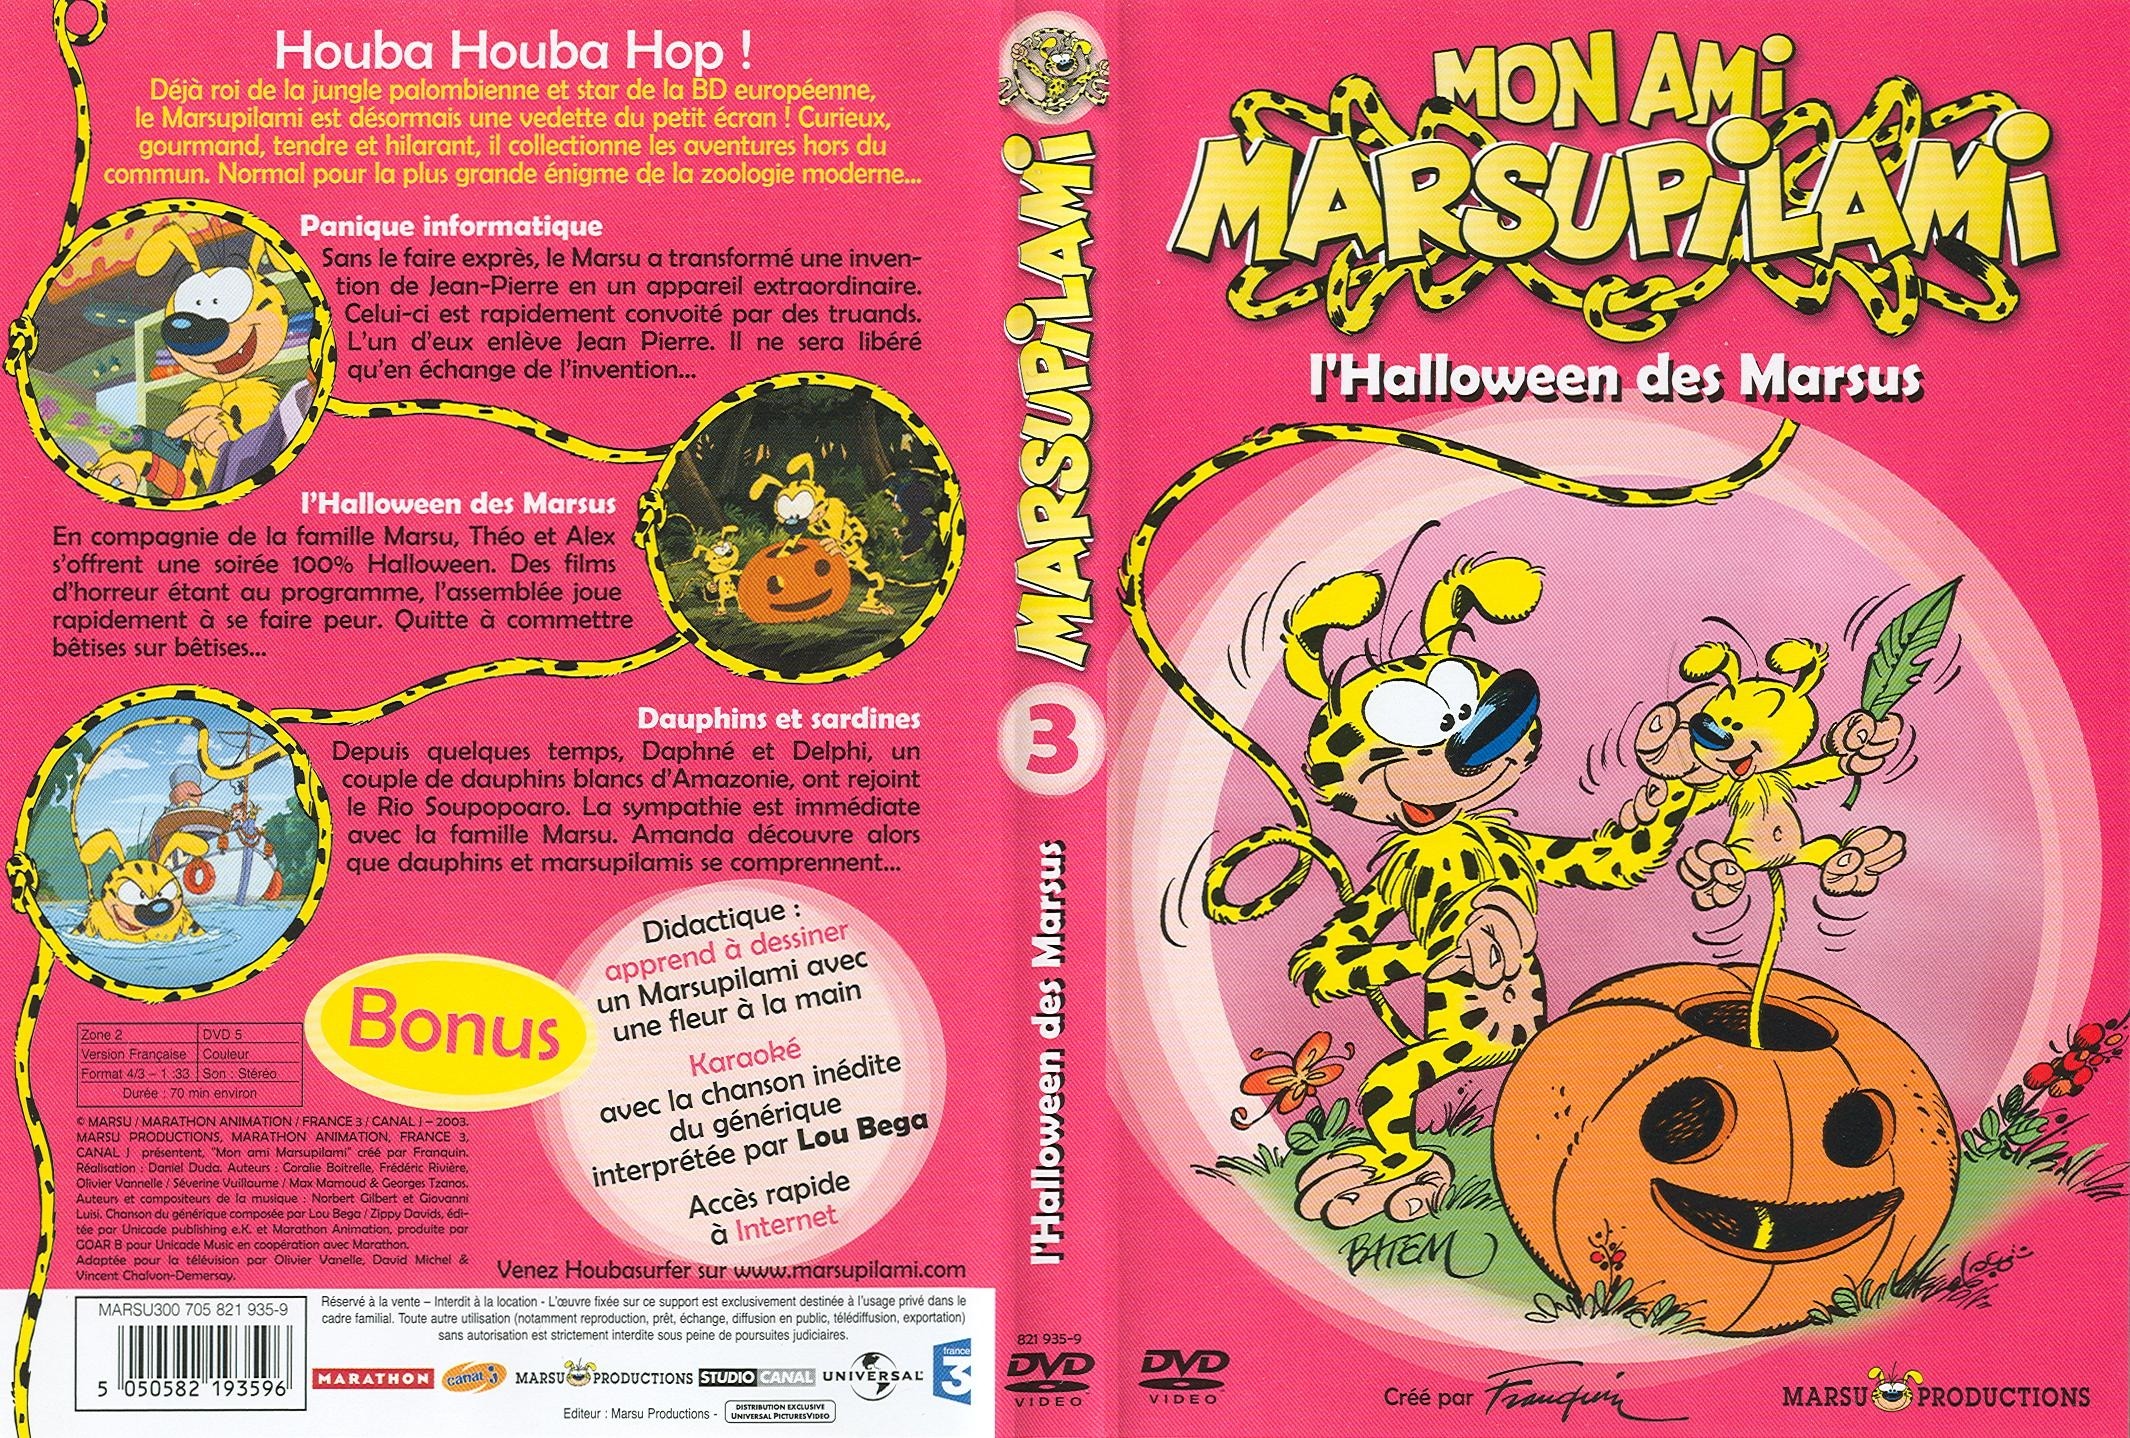 Jaquette DVD Marsupilami vol 3